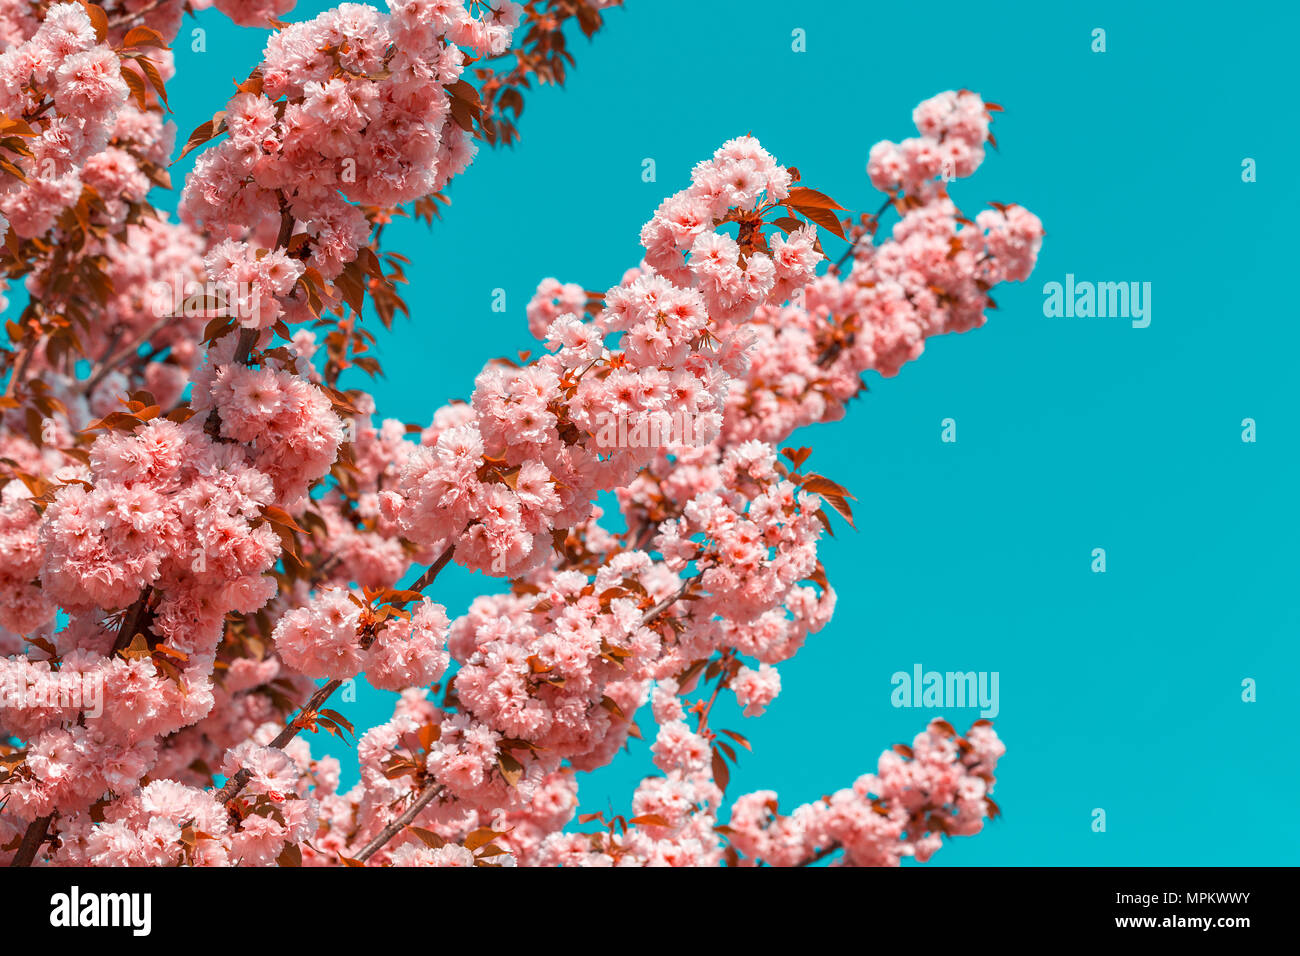 Featured image of post Sch ne Hintergrundbilder Blumen Blau Auch blaue disteln oder skabiosen setzen sch ne sommerliche akzente